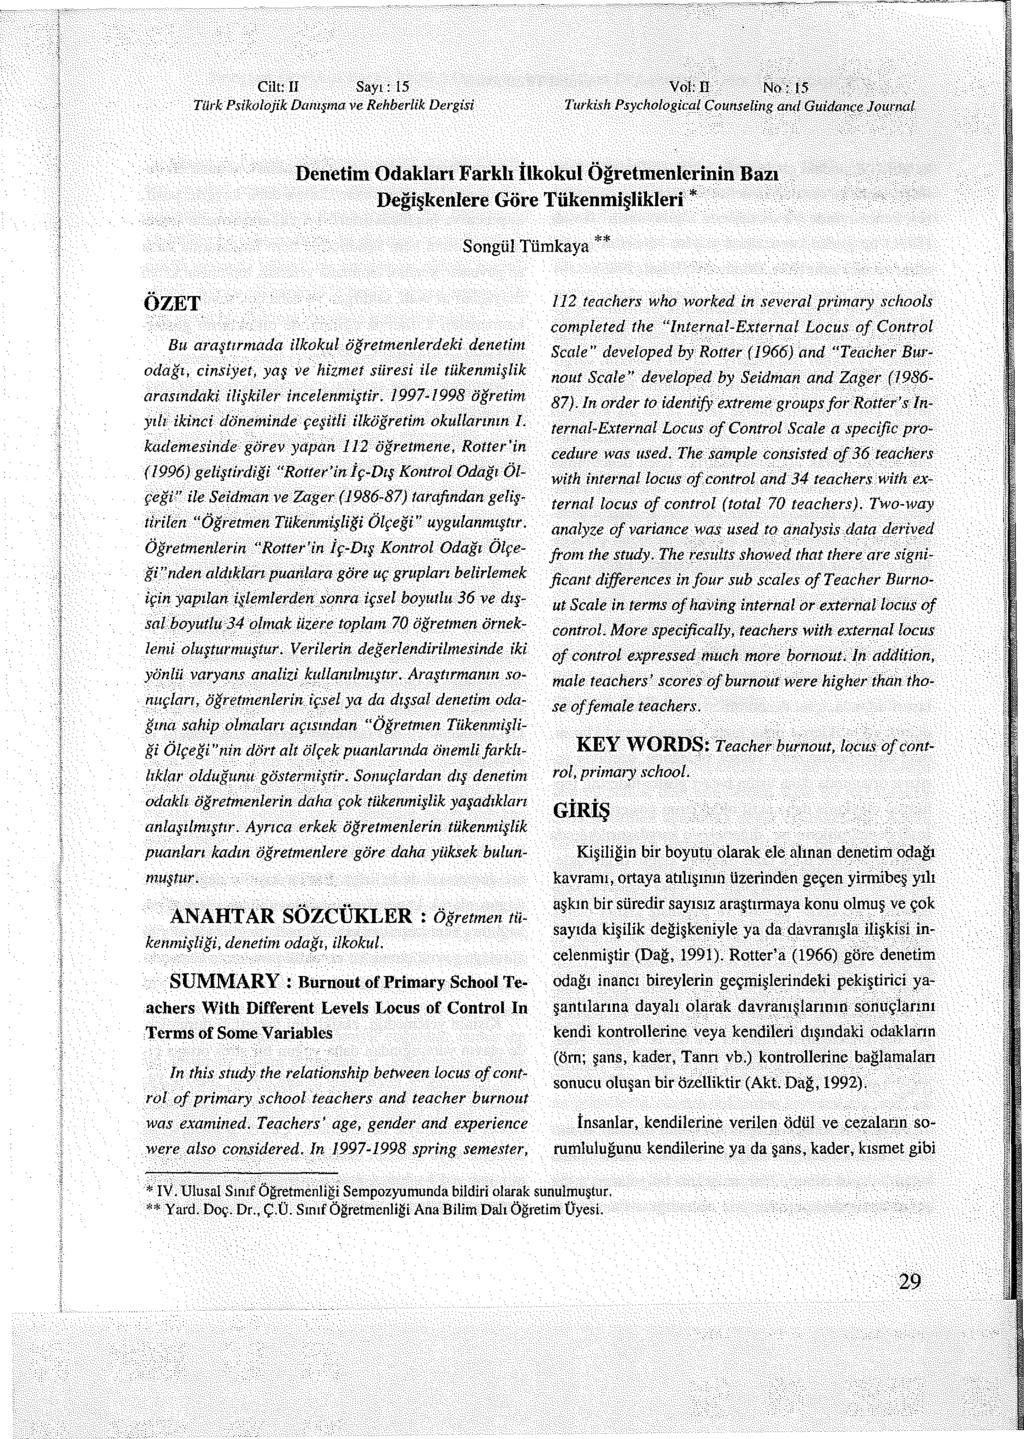 Cilt: II Sayı: 15 Vol: II N o: 15 Türk Psikolojik Danışma ve Rehberlik Dergisi Turkish Psychological Counseling and Guidance Journal Denetim Odakları Farklı İlkokul Öğretmenlerinin Bazı Değişkenlere